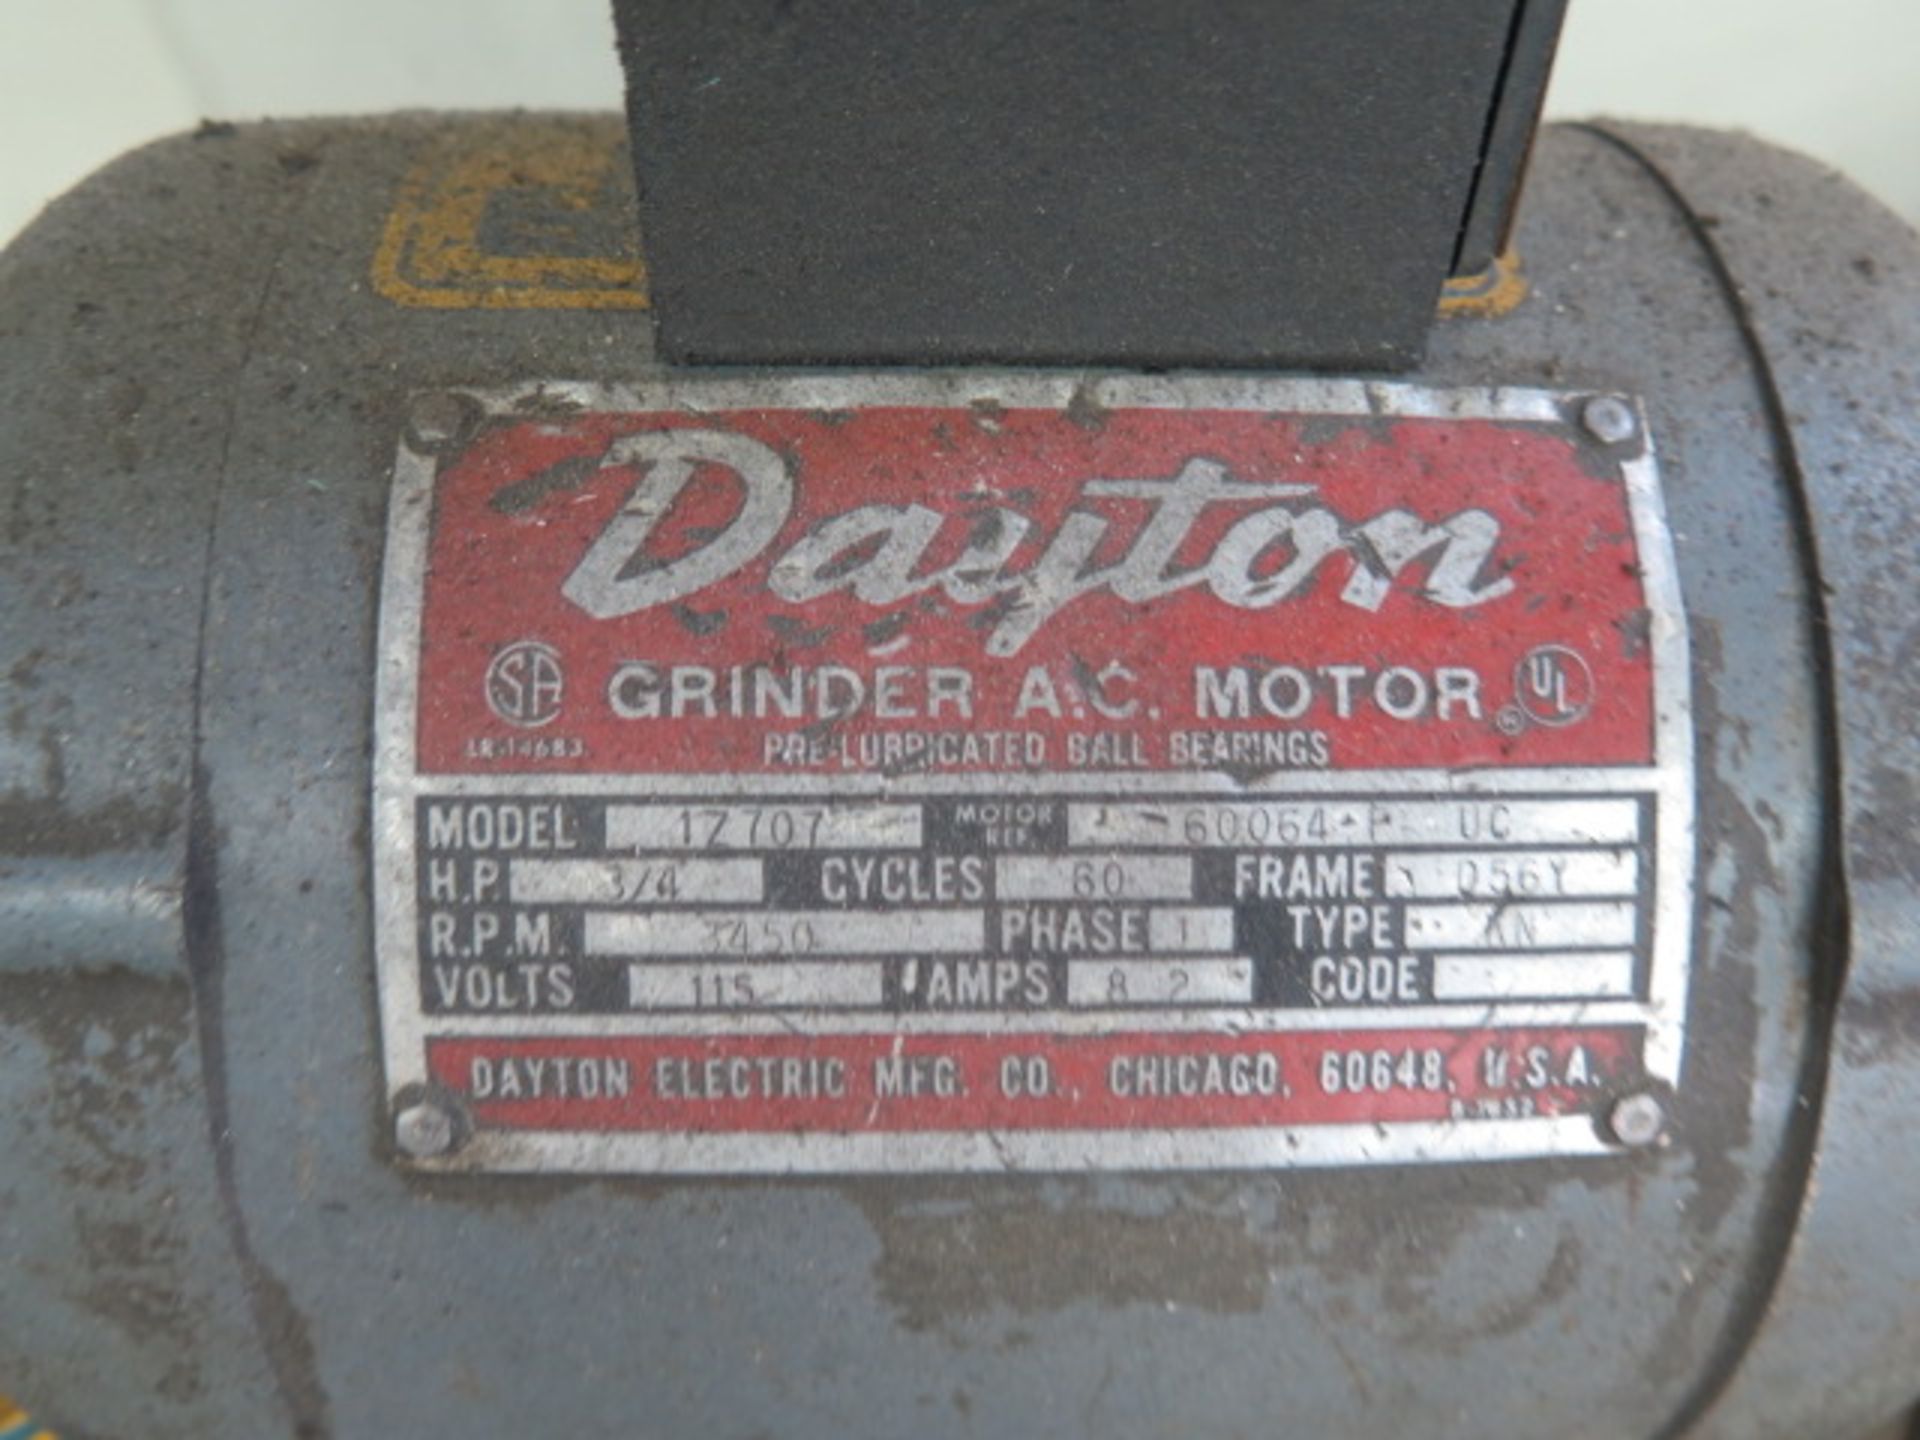 Dayton 8” Pedestal Grinder (SOLD AS-IS - NO WARRANTY) - Image 5 of 5